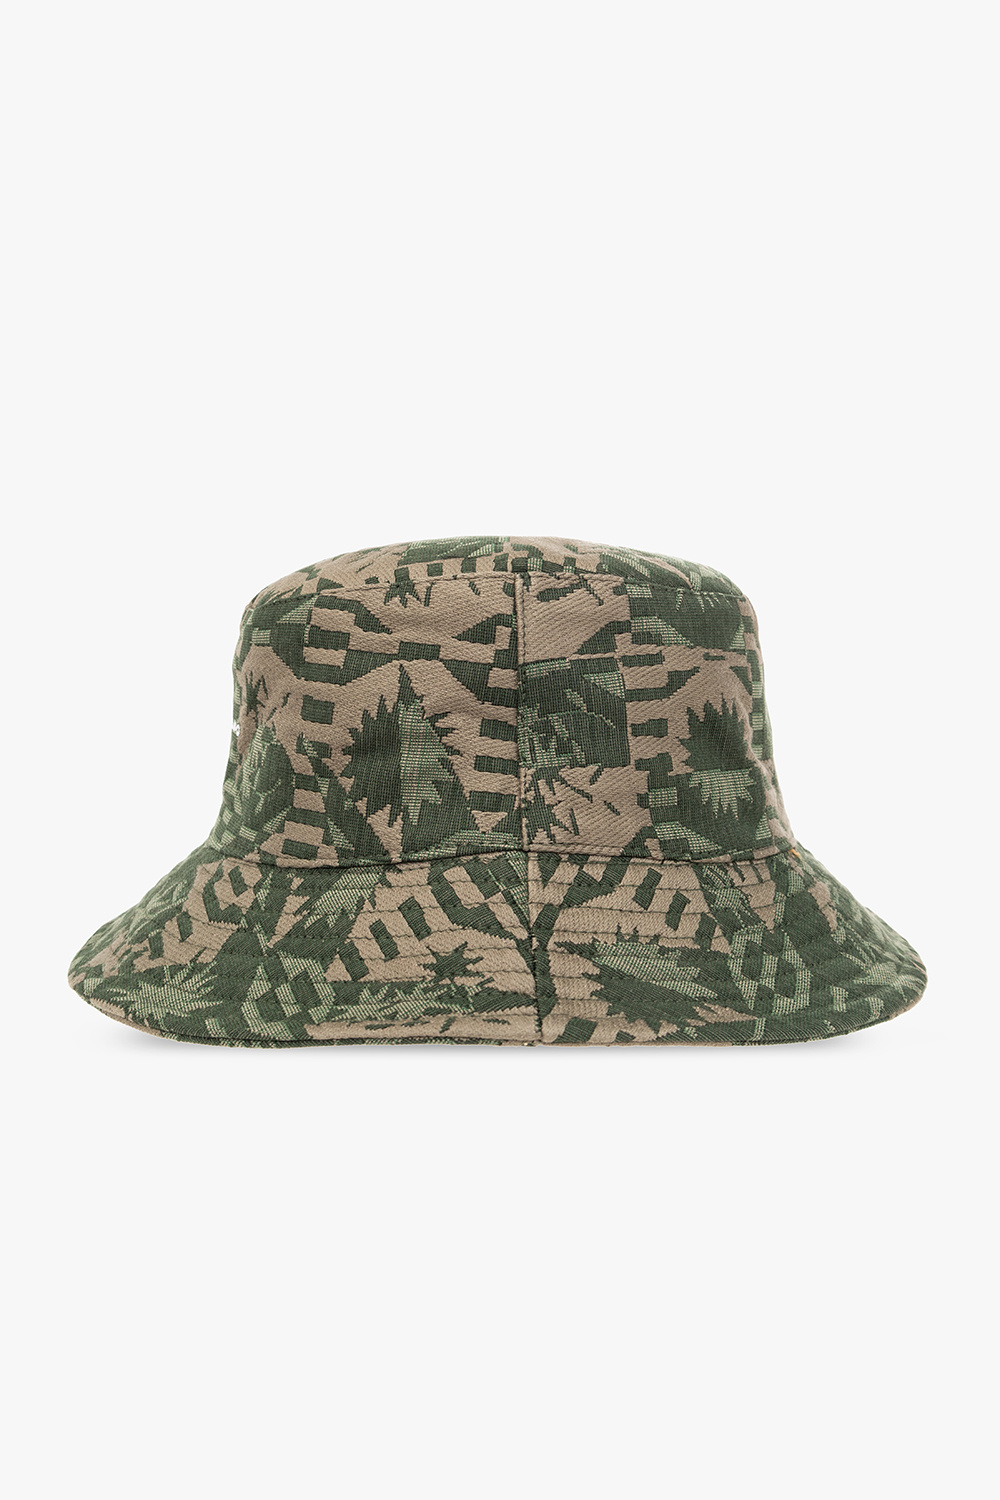 Jacquemus ‘Tecido’ bucket hat